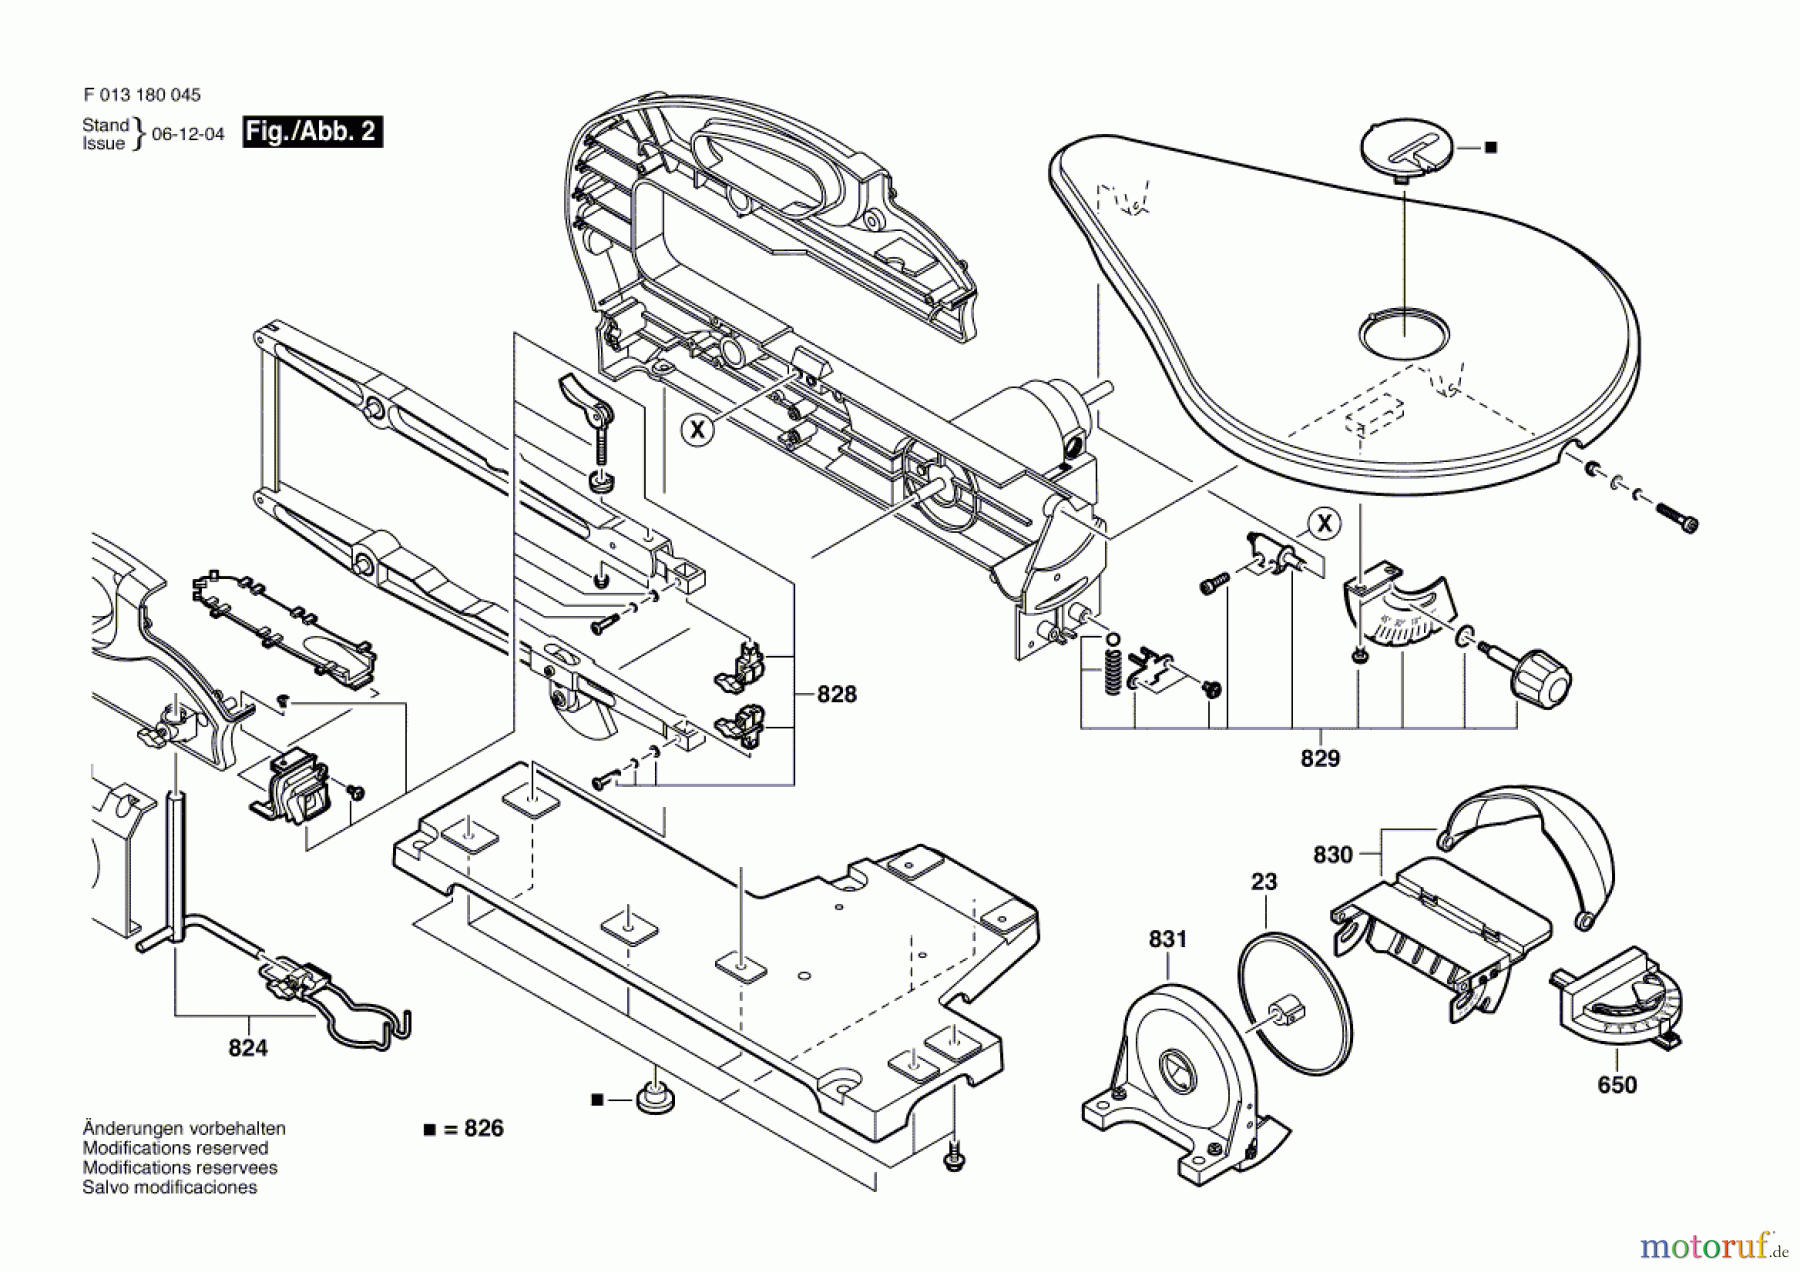  Bosch Werkzeug Bügelsäge 1800 Seite 2